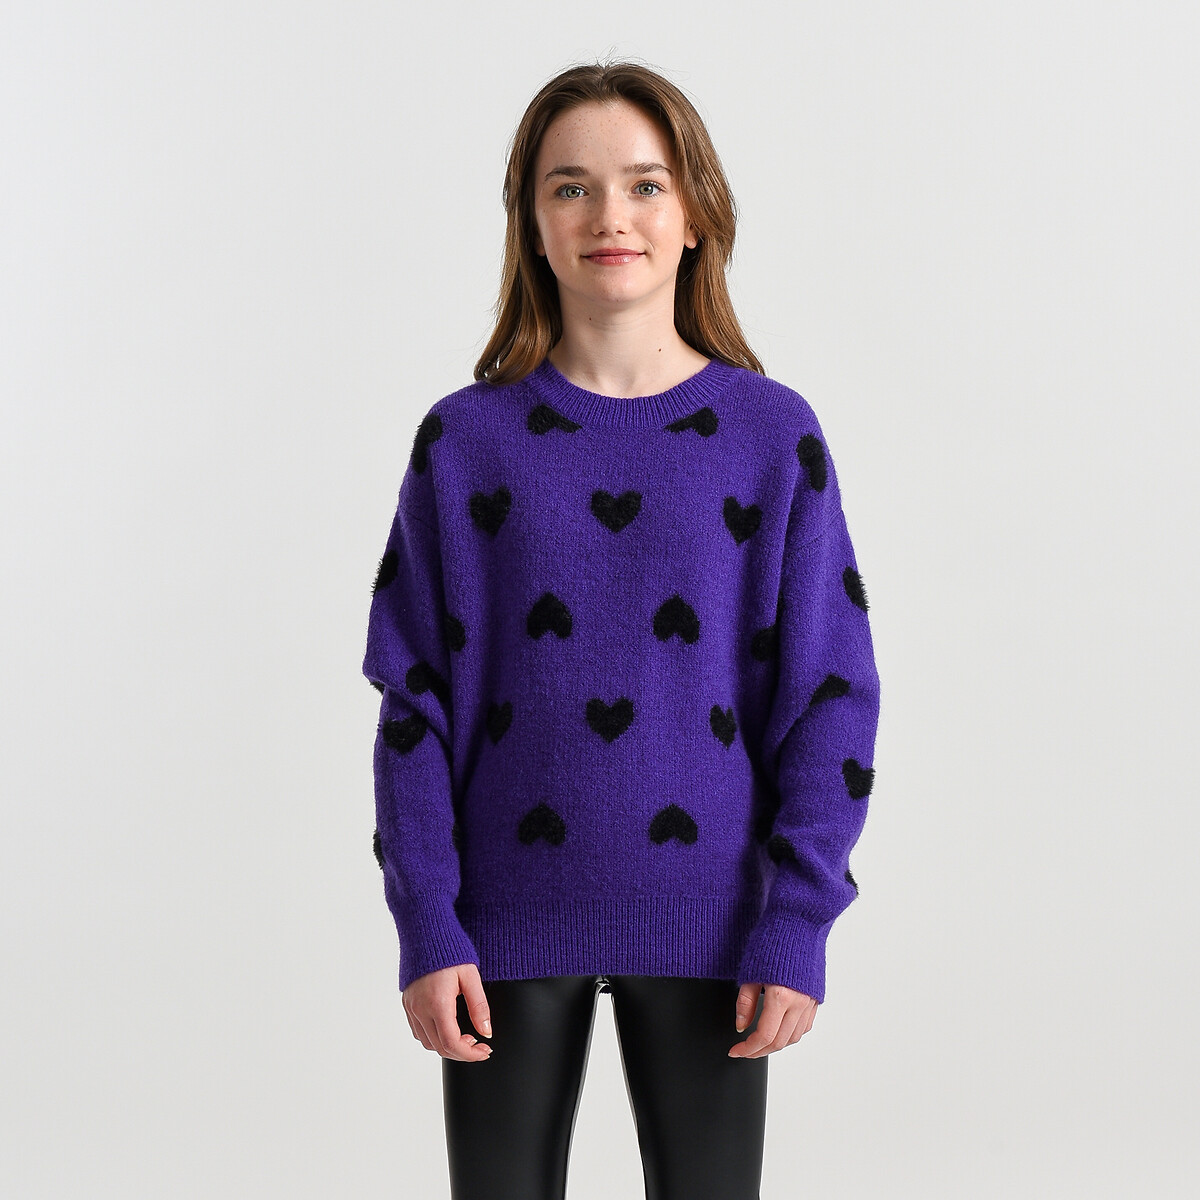 Пуловер Жаккардовый с круглым вырезом 12 лет -150 см фиолетовый